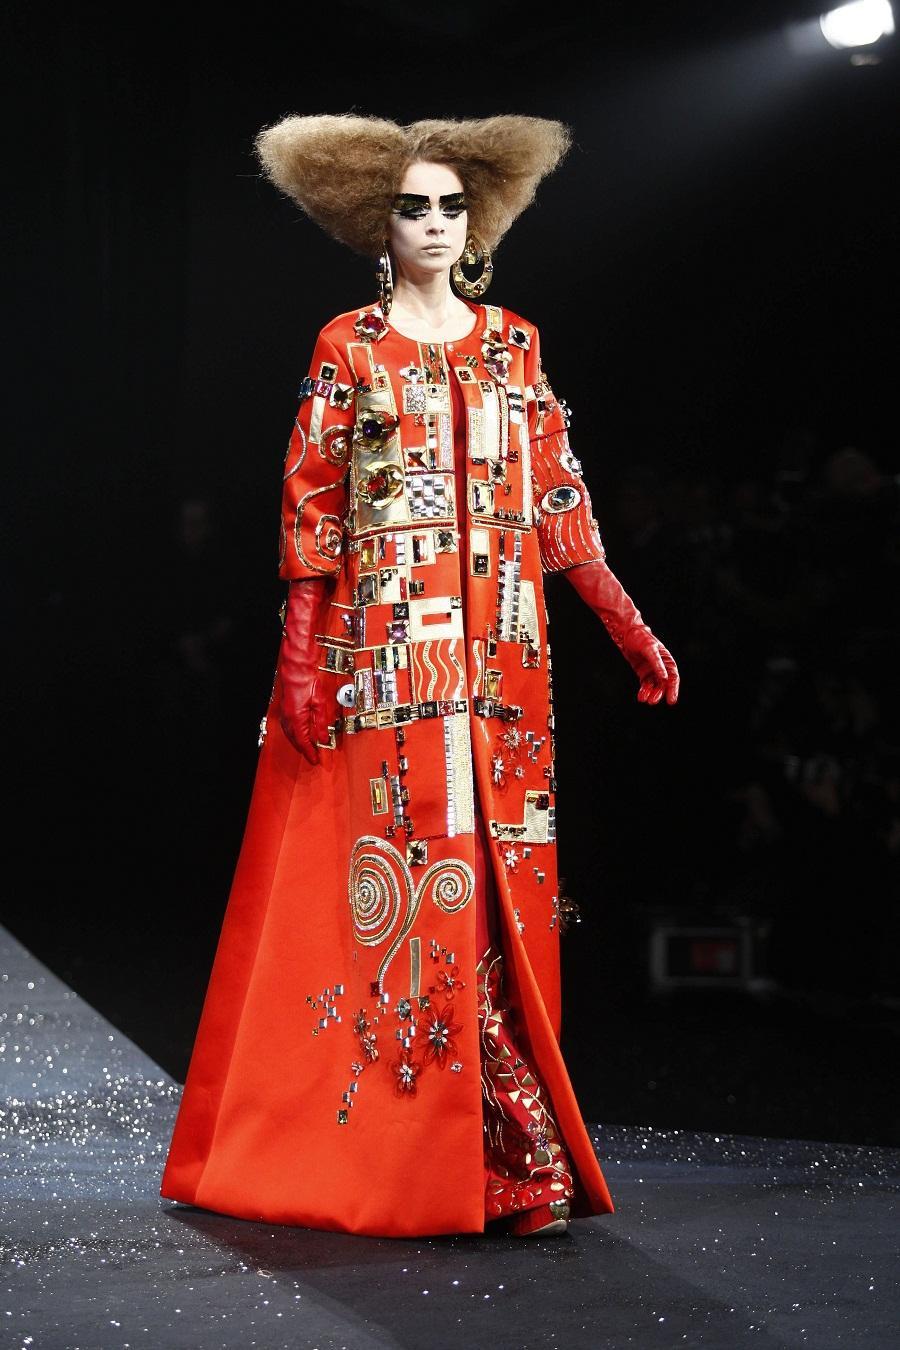 Godine 2008. Christian Dior ponovno je uveo Klimtovu estetiku s odvažnom, raskošnom proljetnom kolekcijom.